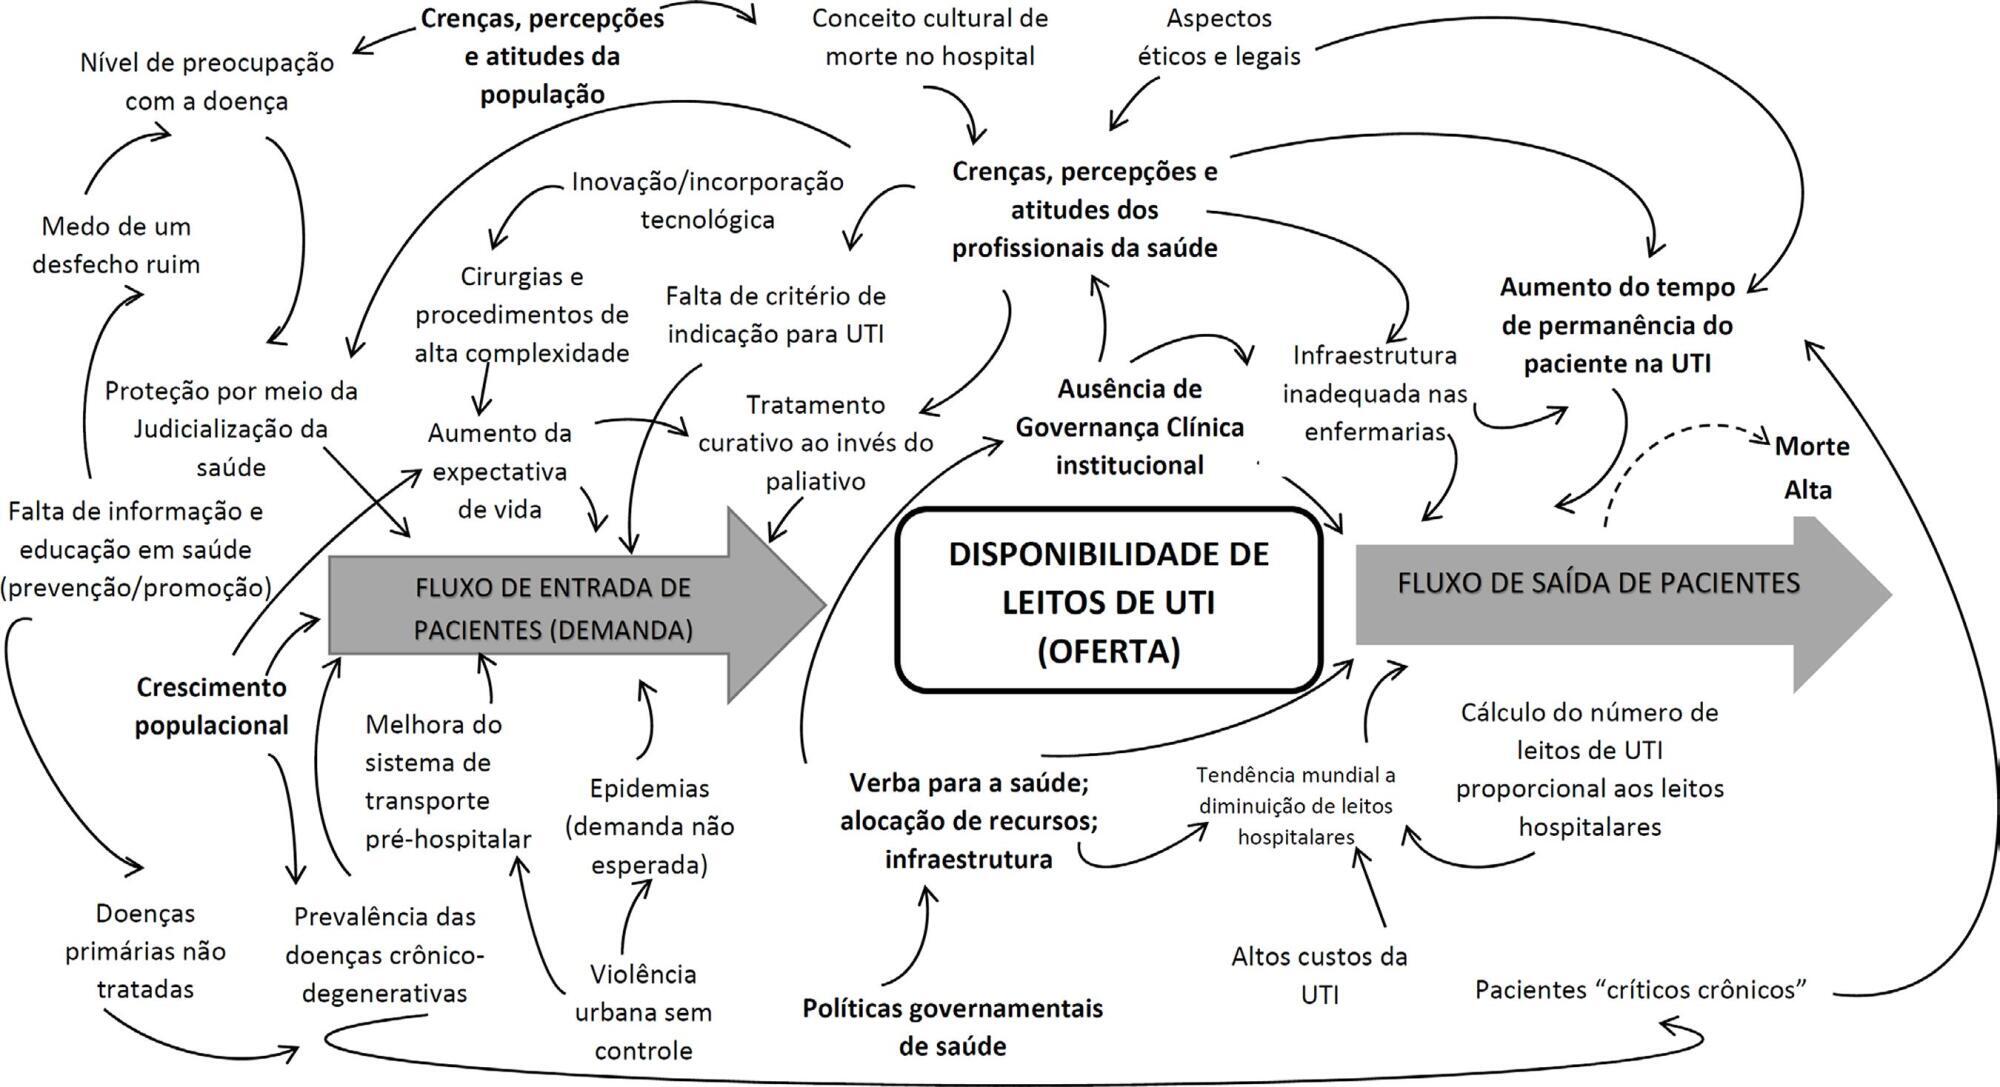 Planejamento e compreensão da rede de terapia intensiva no Estado do Rio de Janeiro: um problema social complexo